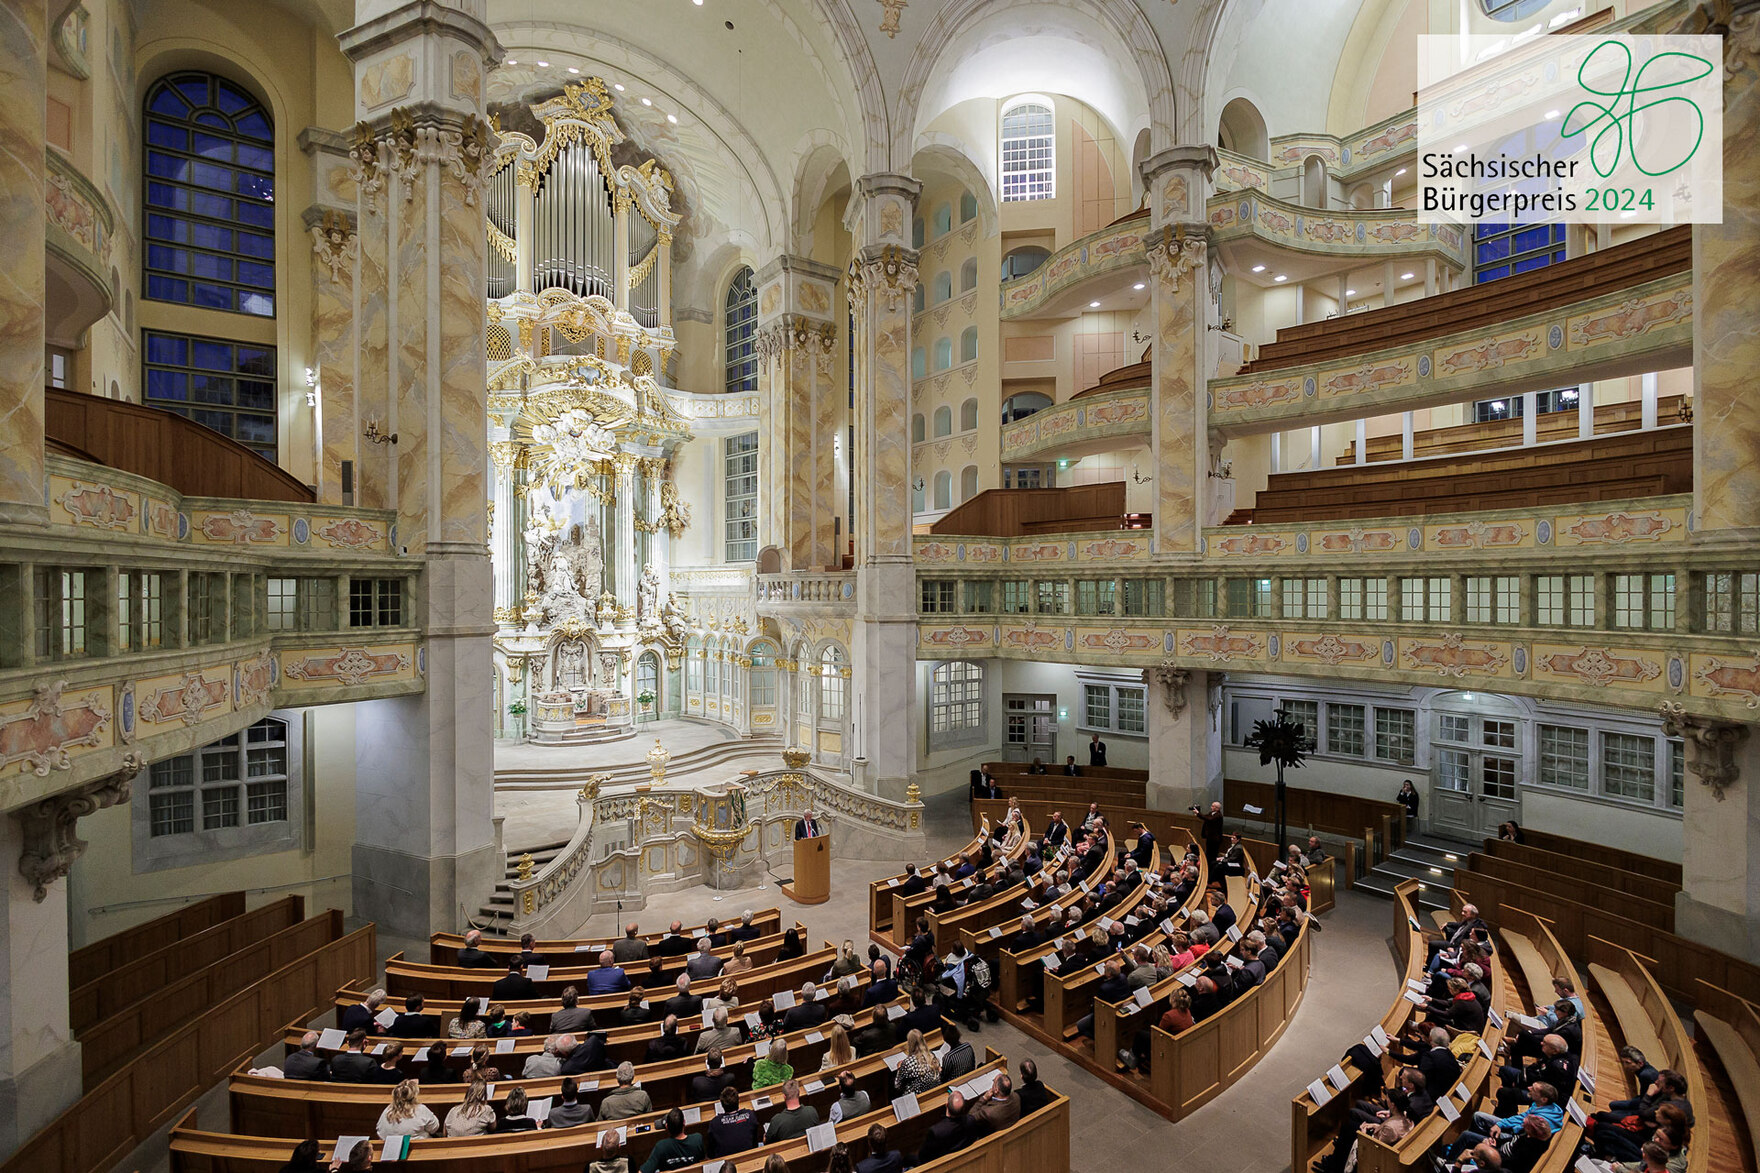 Der Blick in die mit Menschen gefüllte Dresdner Frauenkirche. Zusätzlich befindet sich auf dem Bild das Logo des Bürgerpreises 2024